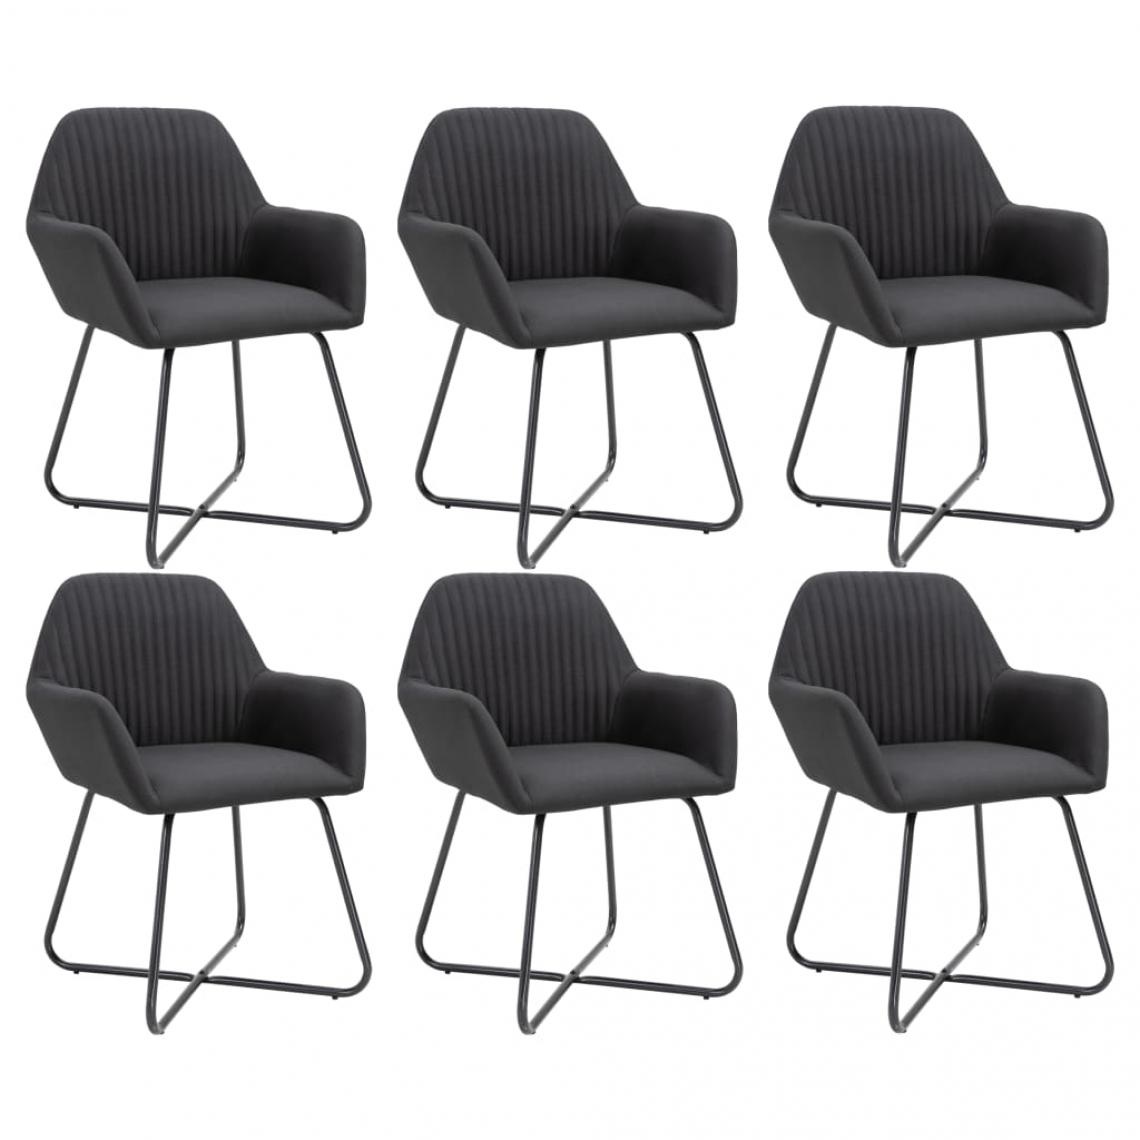 Decoshop26 - Lot de 6 chaises de salle à manger cuisine design moderne tissu noir CDS022715 - Chaises